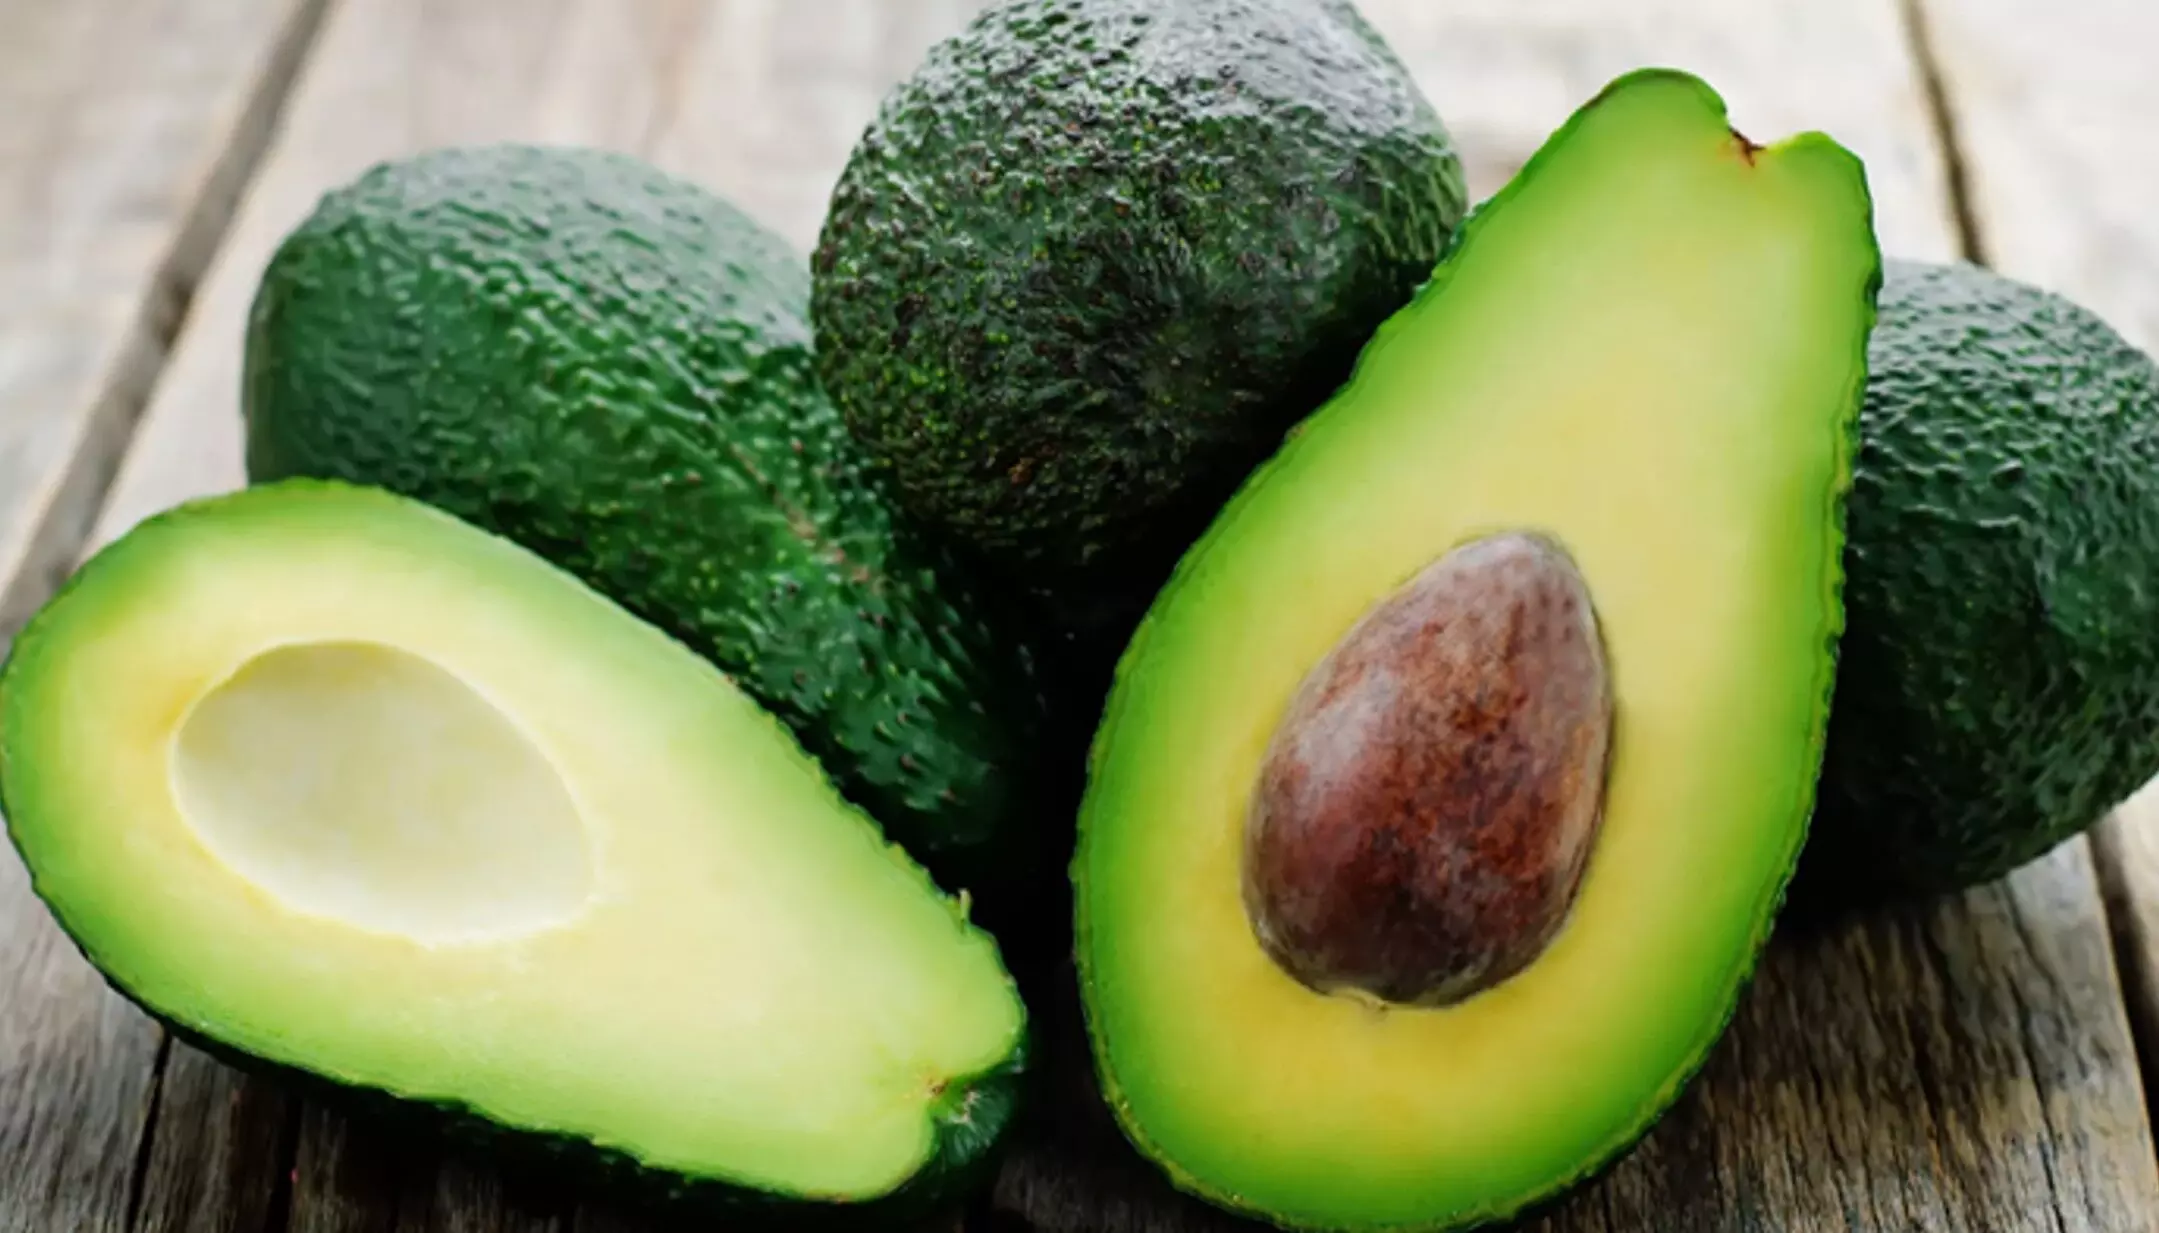 Avocado Benefits: सुफर फूड है एवोकाडो, इसे डाइट में करेंगे शामिल तो होंगे ये ज़बरदस्त फायदे